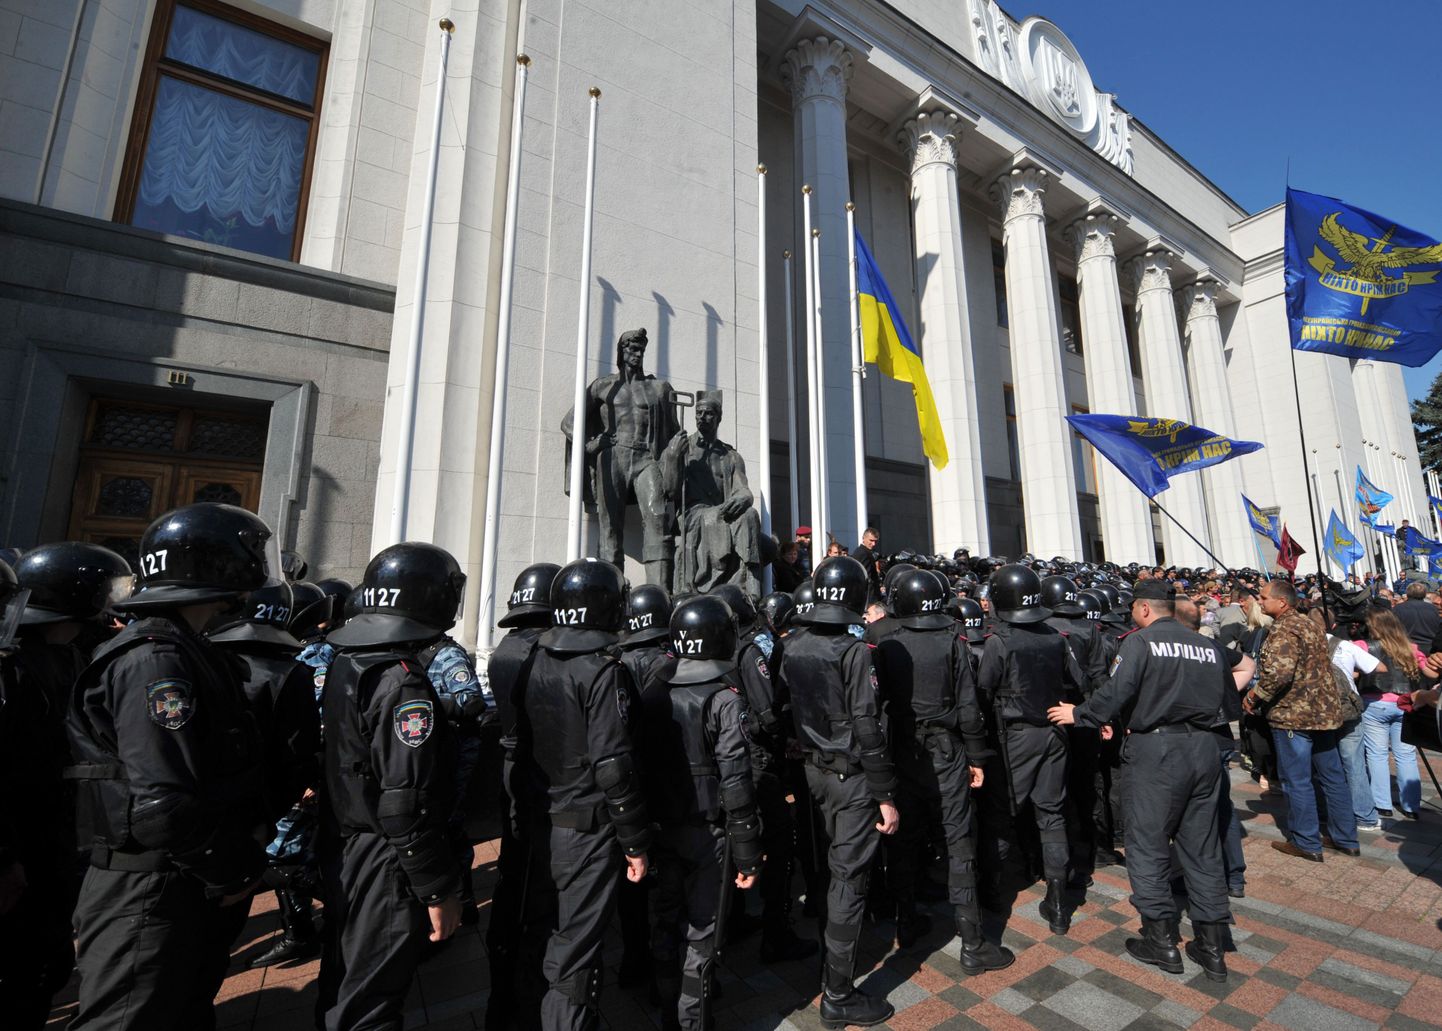 Ka septembris tulid Tšernobõli veteranid Ukraina parlamendihoone ette meelt avaldama.